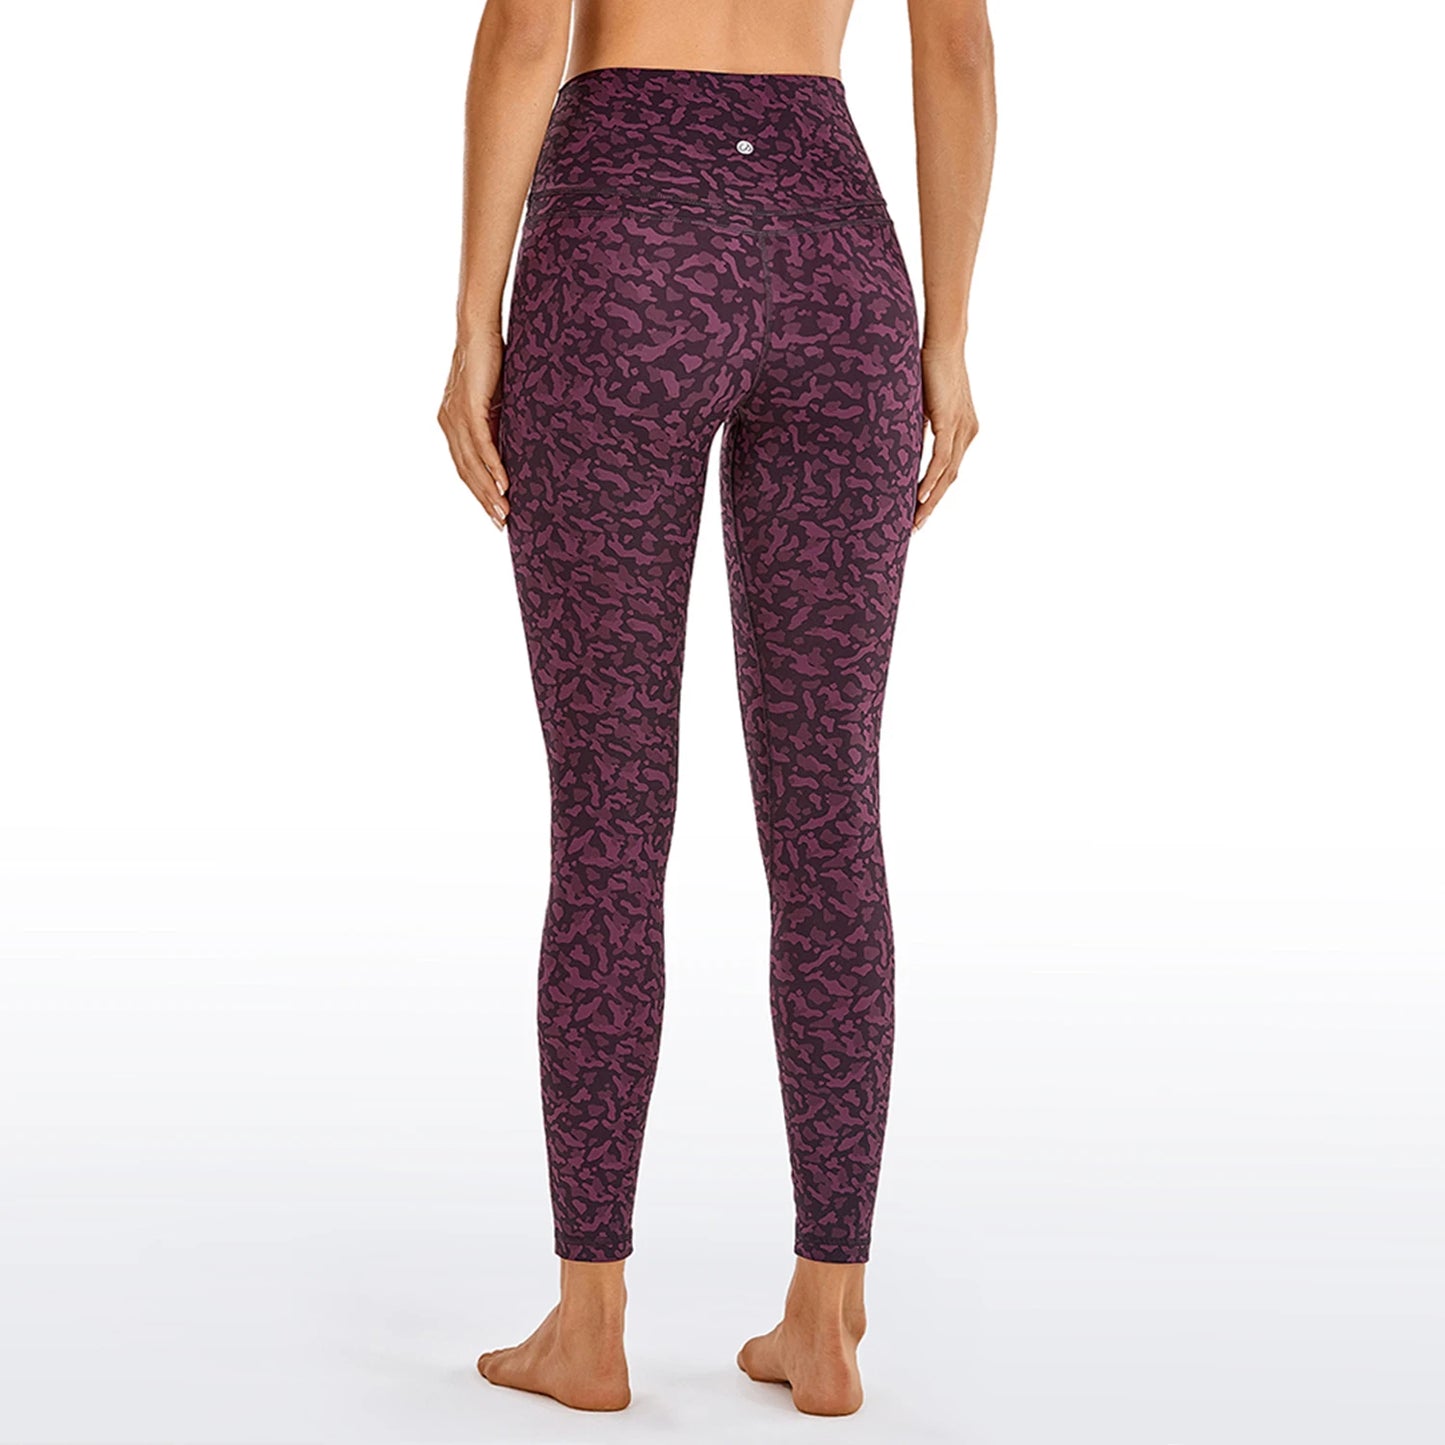 Crz yoga feminino nu sentindo cintura alta calças de yoga apertadas leggings de treino de fitness com alta elasticidade-25 polegadas